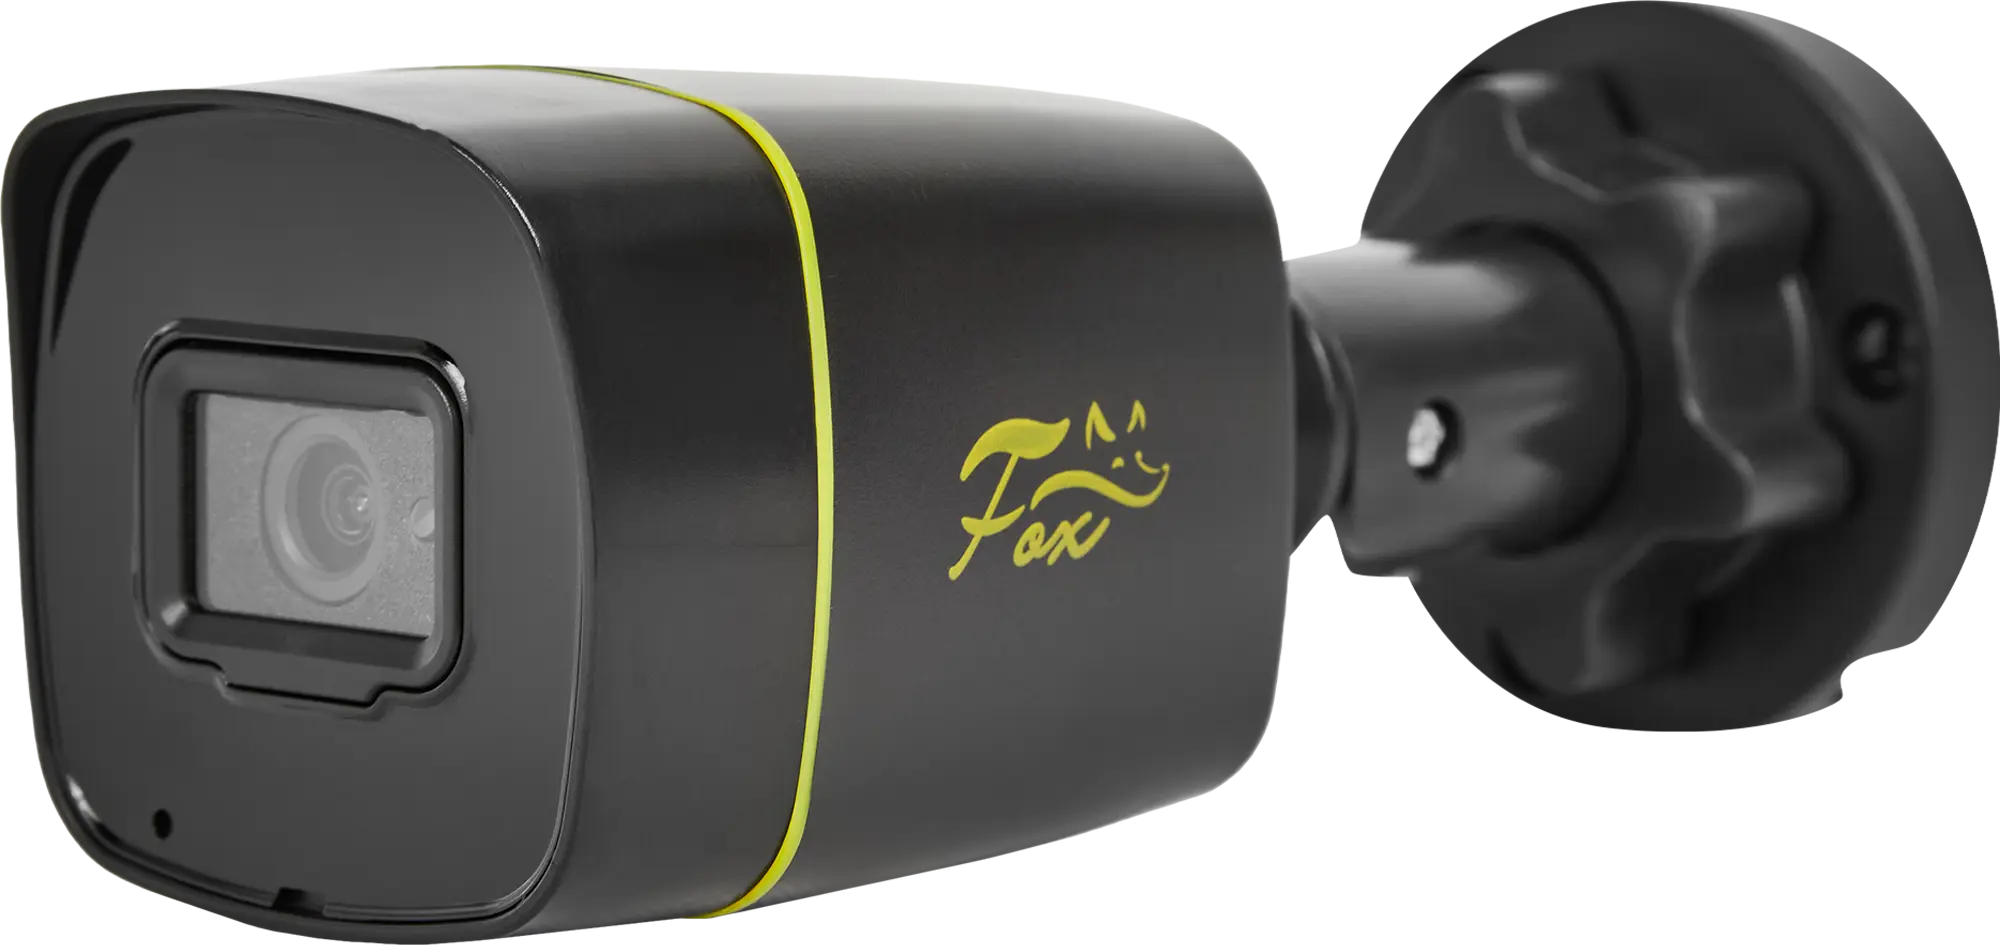 Камера уличная Fox FX-P2C 2 Мп 1800Р цилиндрическая цвет черный камера уличная fox fx p2c 2 мп 1800р цилиндрическая